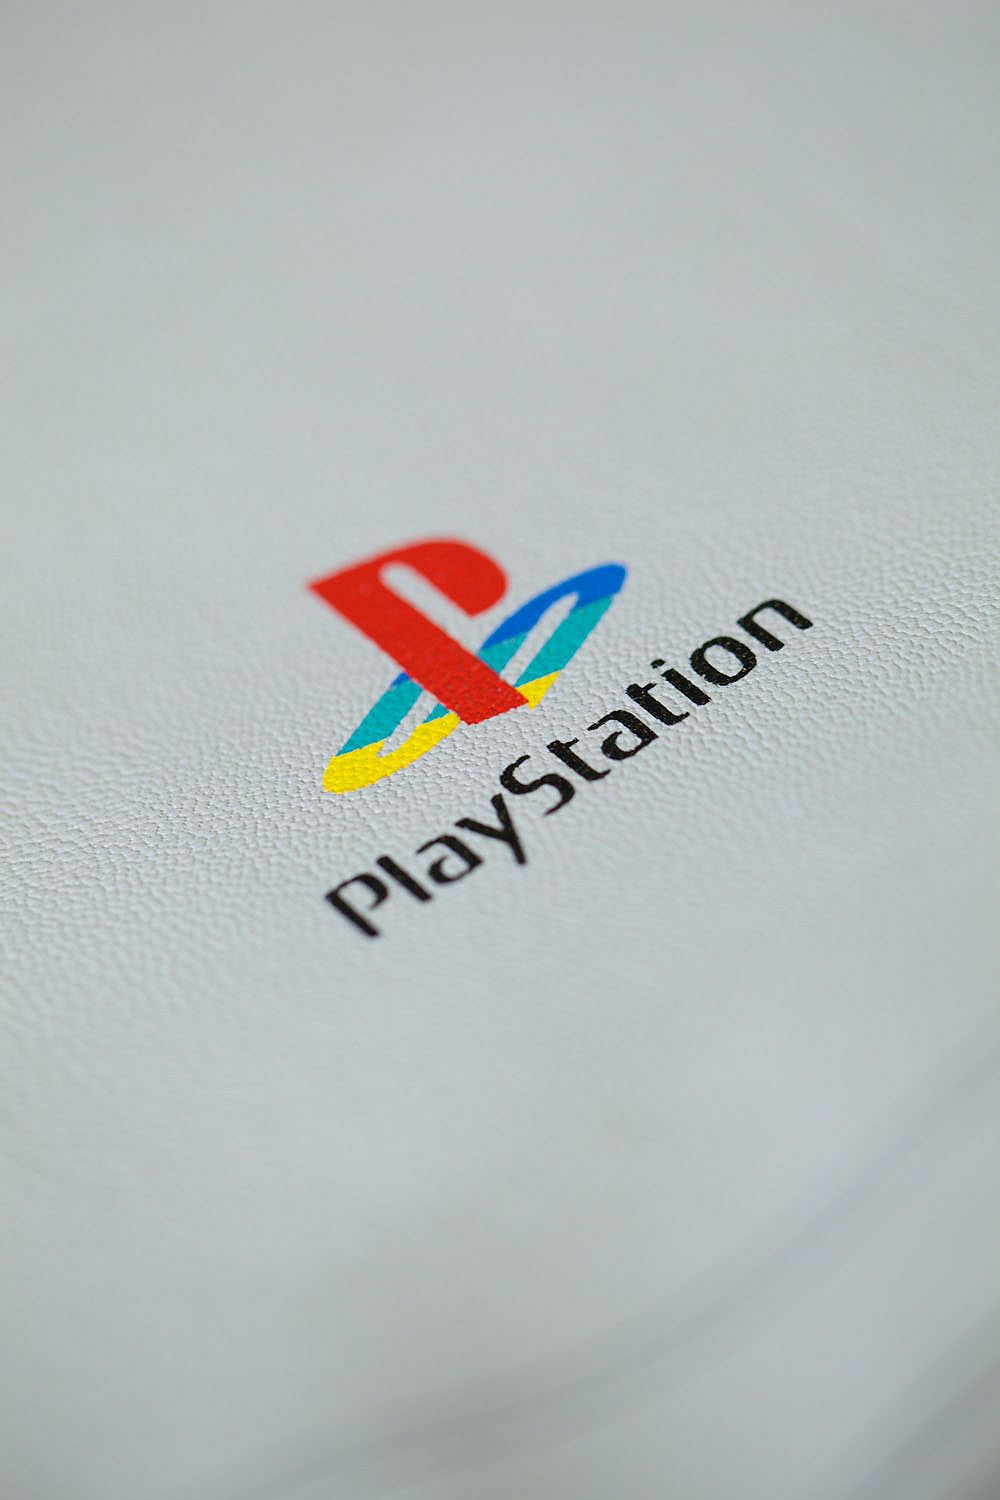 Il ventesimo anniversario di PlayStation celebrato anche con una linea di abbigliamento